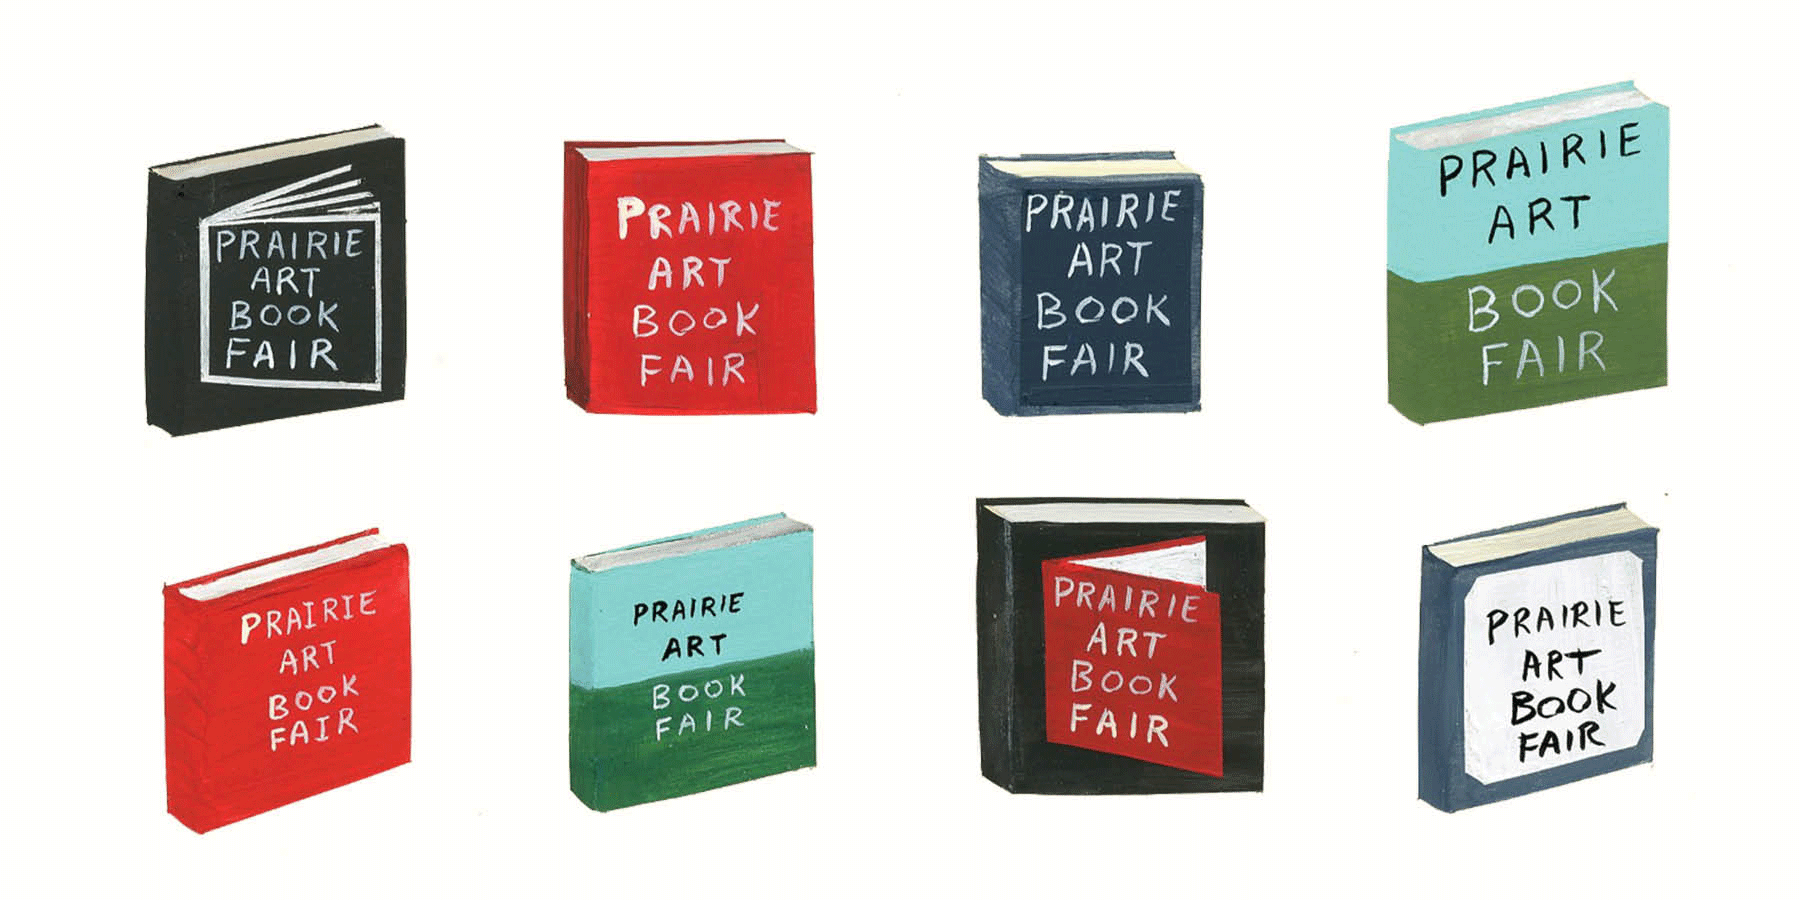 Prairie Art Book Fair books dancing back and forth